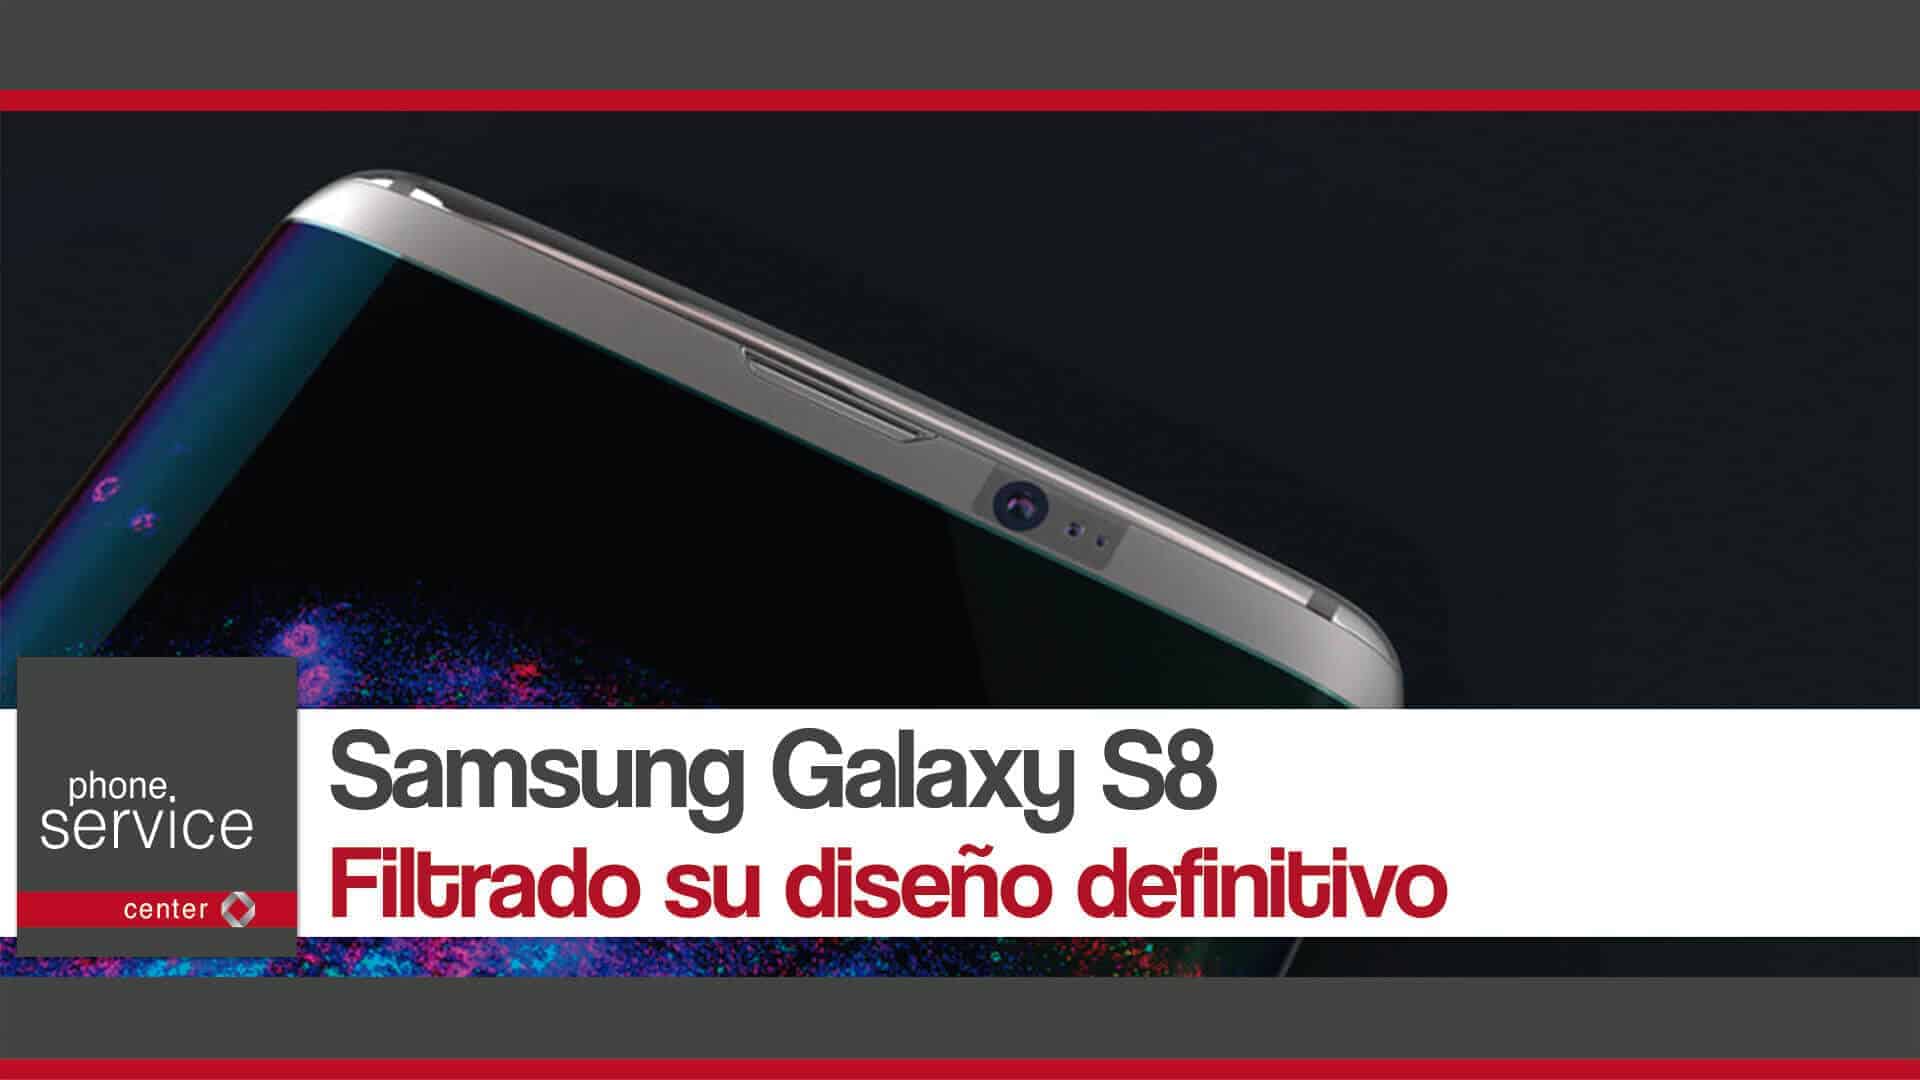 Samsung Galaxy S8 filtrado su diseno definitivo